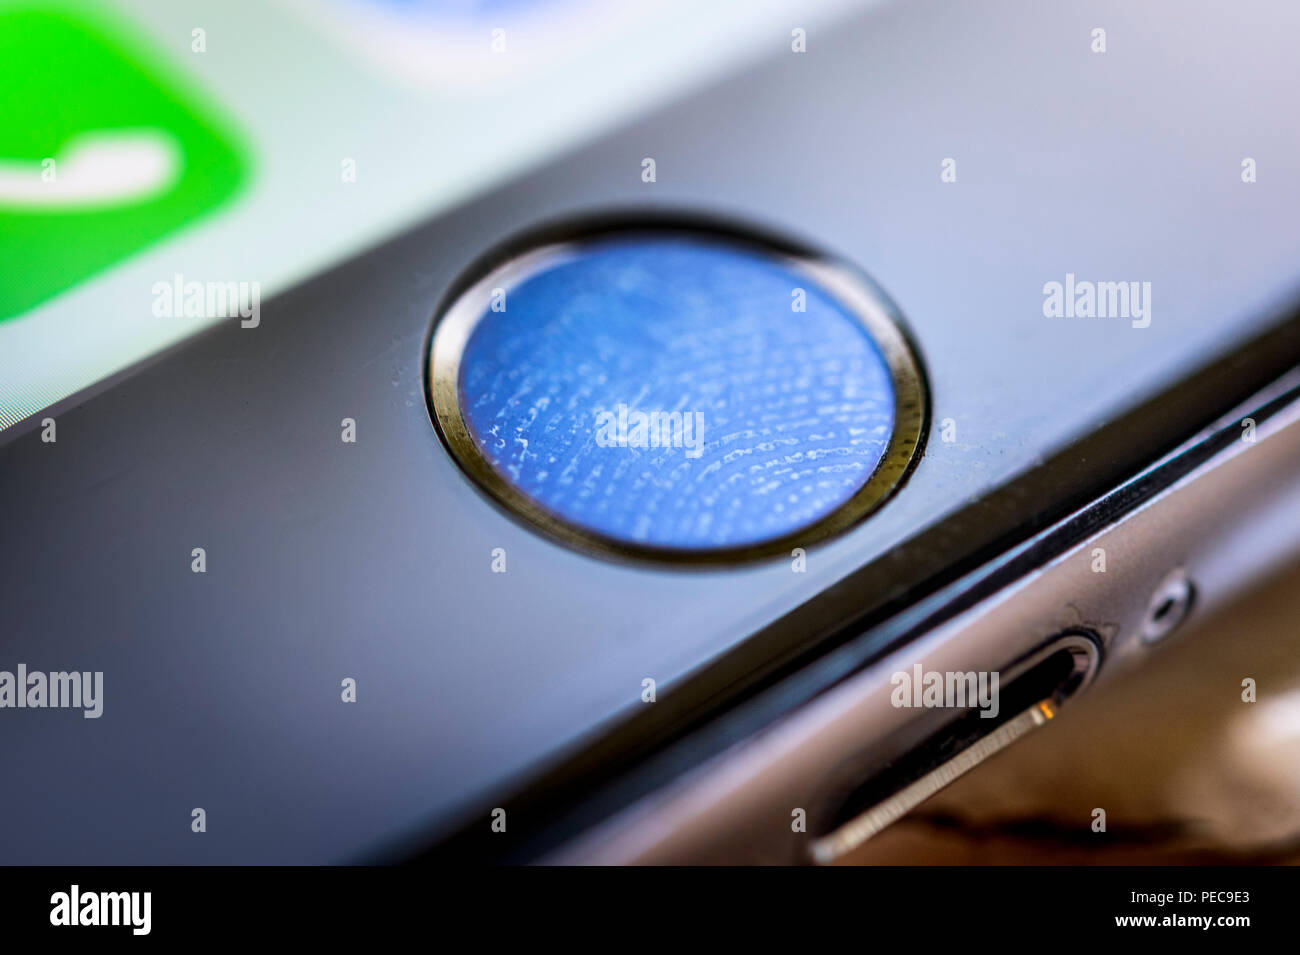 Close-up de bouton d'accueil de l'iPhone 6s avec capteur d'empreintes digitales, empreintes digitales sur Touch ID, lecteur d'empreintes digitales, smartphone, iOS Banque D'Images